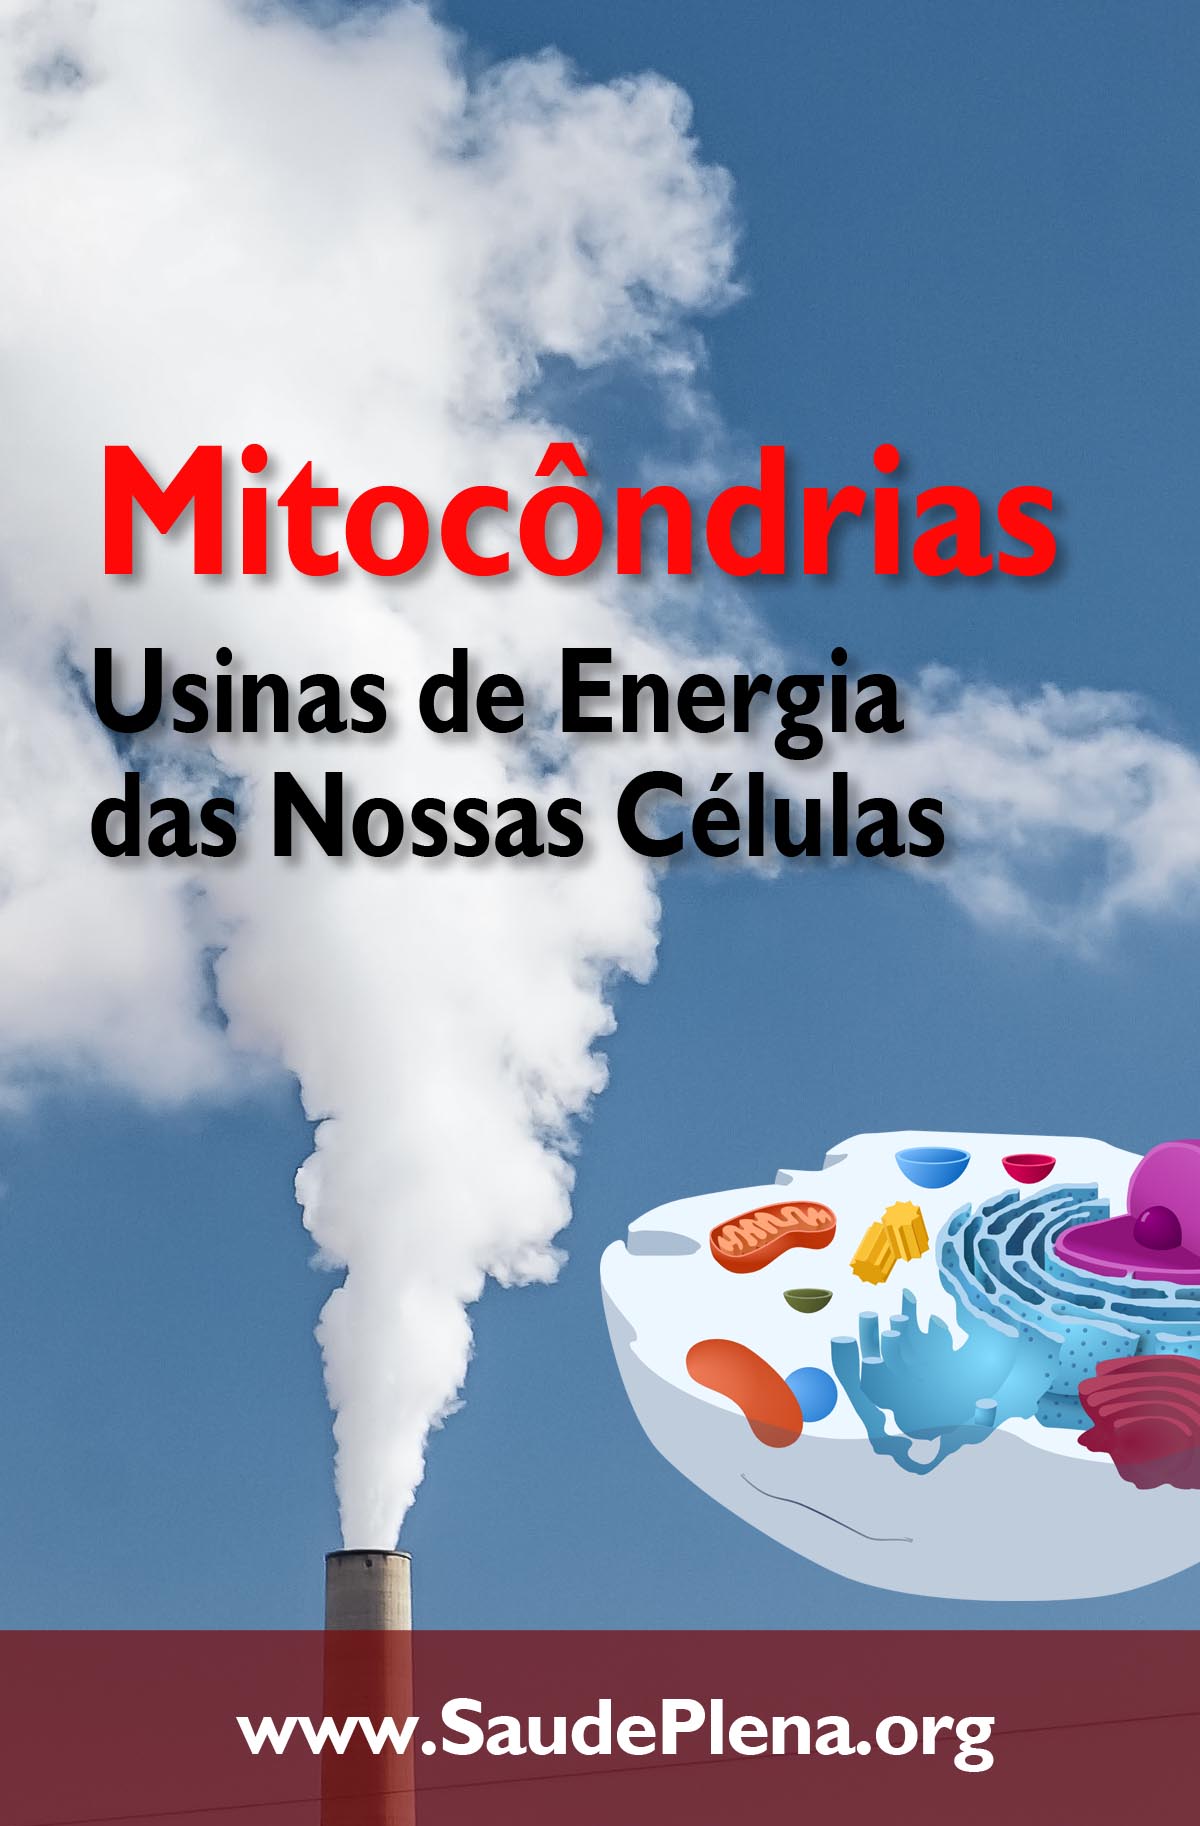 Mitocôndrias - Usinas de Energia das Nossas Células